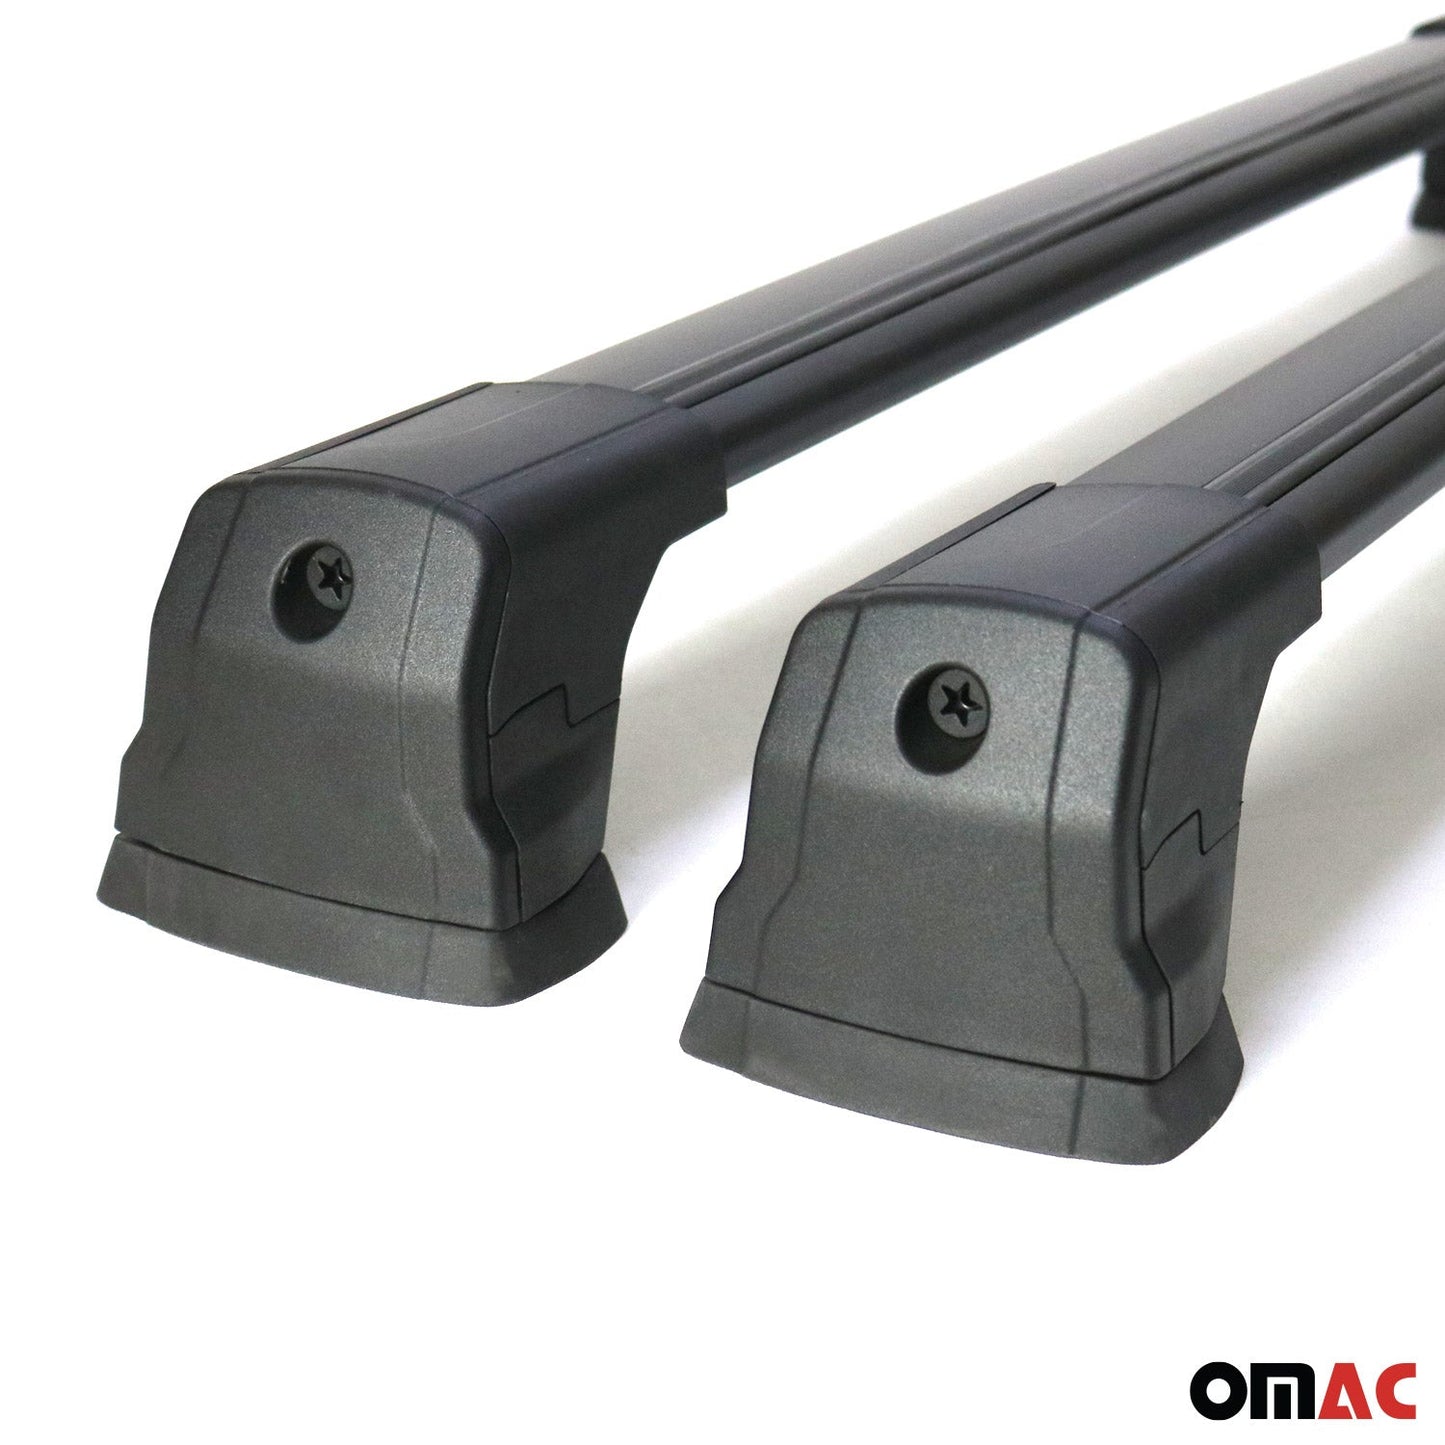 OMAC Fix Points Roof Racks Cross Bar for Mercedes C Class W204 2010-2014 Alu Black 4761913B